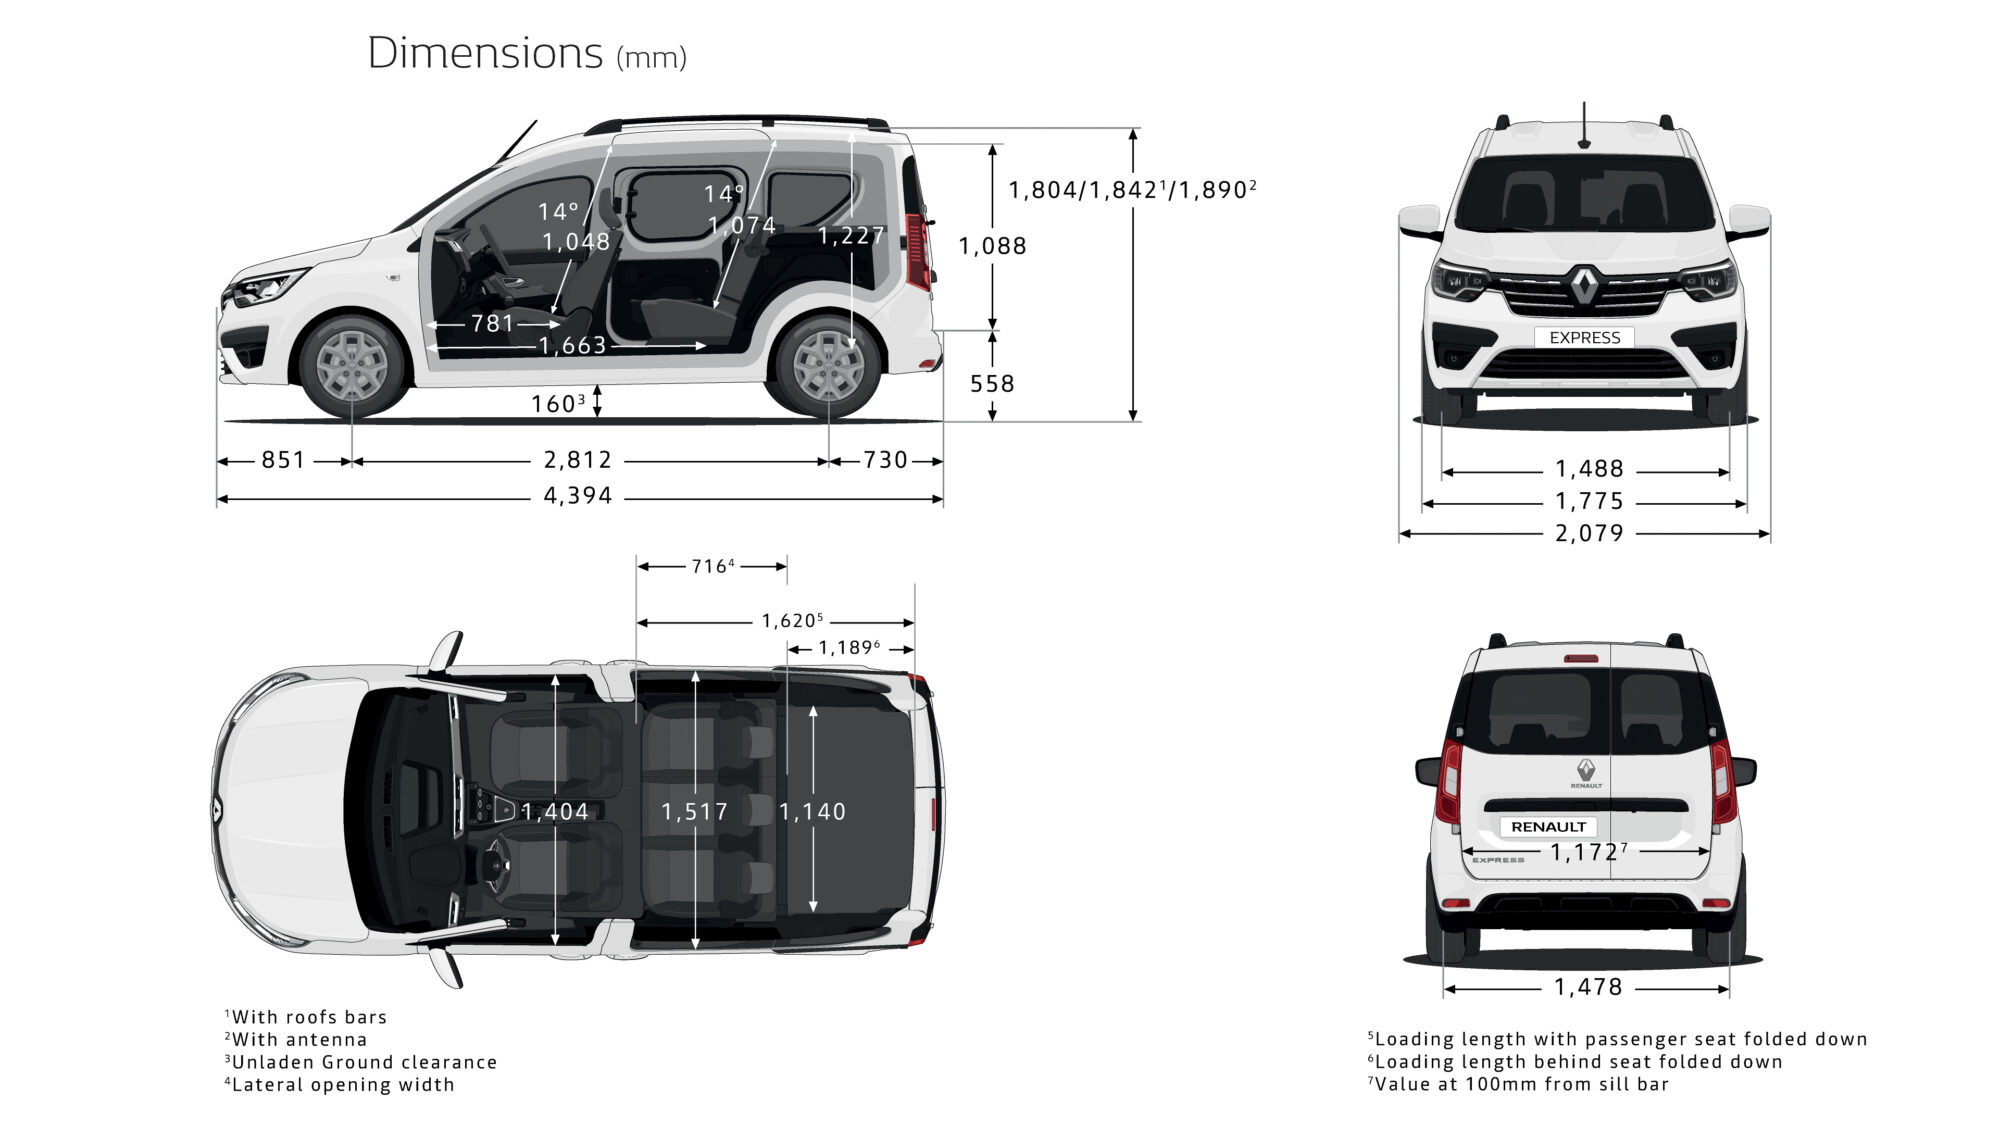 2021 - Nouveau Renault Express - Illustrations techniques